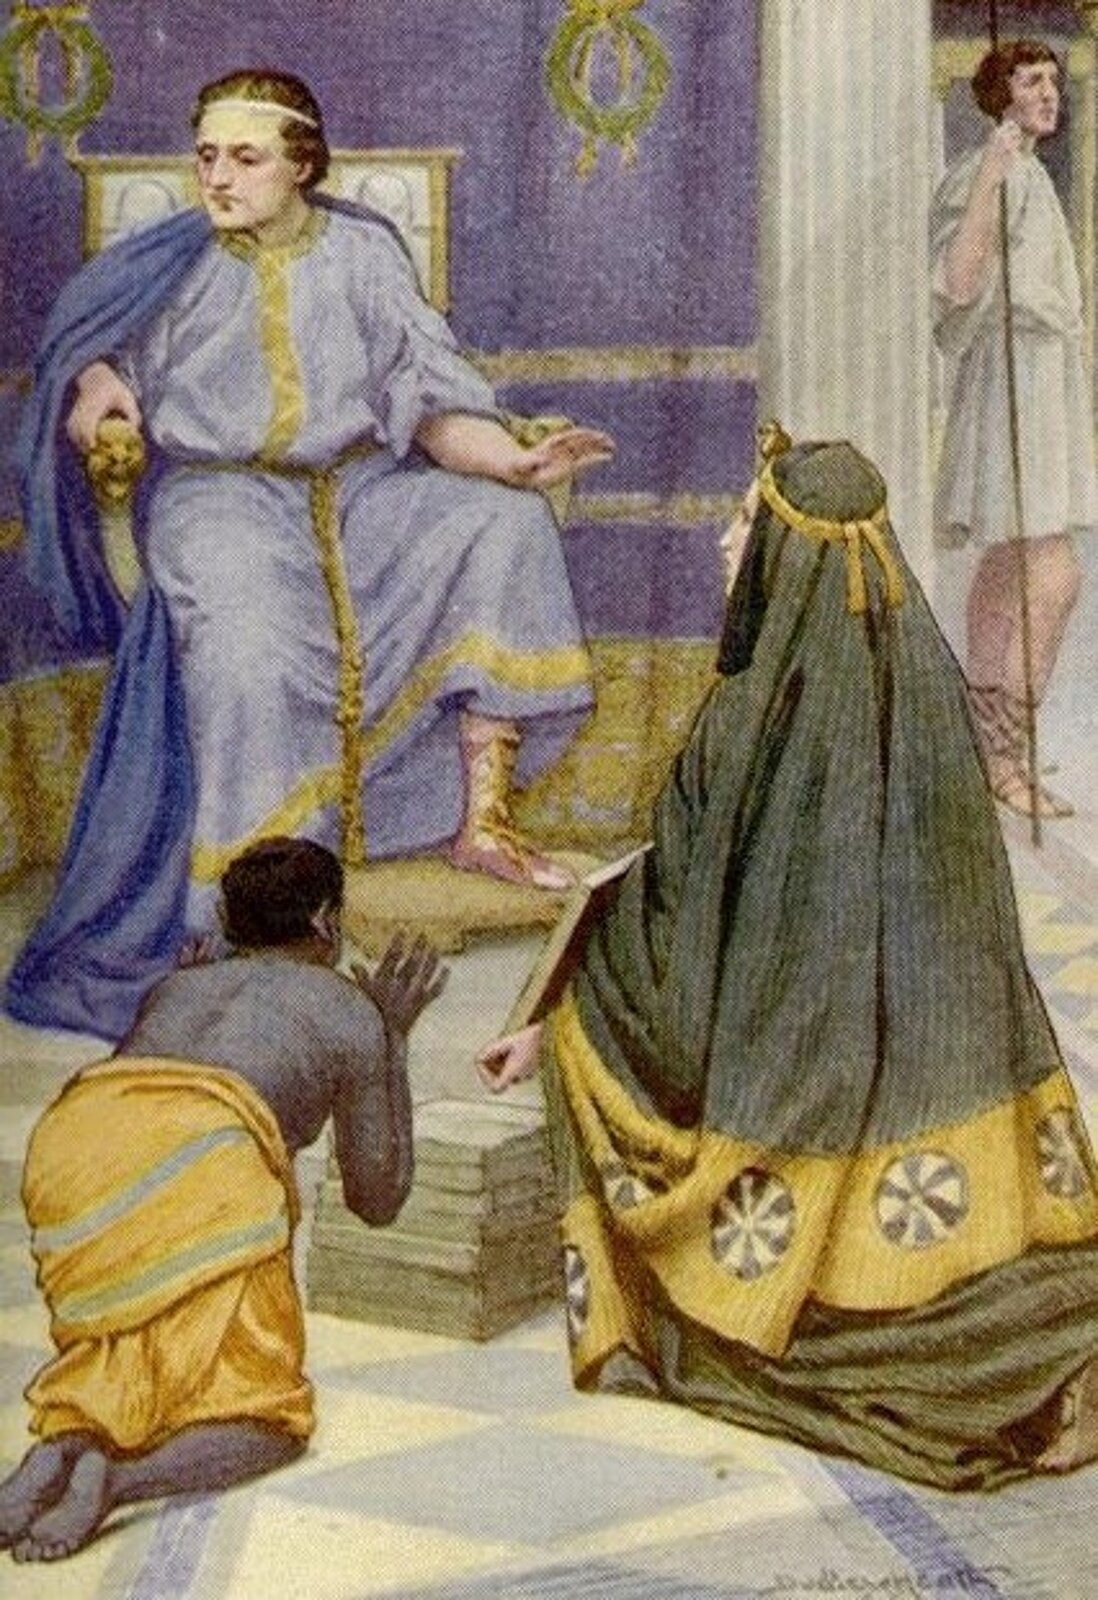 Ilustracja przedstawia obraz „Tarquinius Superbus otrzymuje książki od prorokini” autorstwa Mary MacGregor. Obraz ukazuje postać mężczyzny siedzącego na bogato zdobionym krześle. Postać odziana jest w błękitne szaty ze złotymi zdobieniami oraz niebieską pelerynę. Postać patrzy w lewo. Przed mężczyzną klęczą dwie postaci - kobieta i mężczyzna. Kobieta odziana jest w zielone szaty, w rękach trzyma obraz. Patrzy prosząco na mężczyznę. Obok kobiety widać ciemnoskórego sługę, który klęka i ma uniesione do góry dłonie. Kłania się władcy. W tle widoczna jest również postać mężczyzny trzymającego włócznię w prawej dłoni.